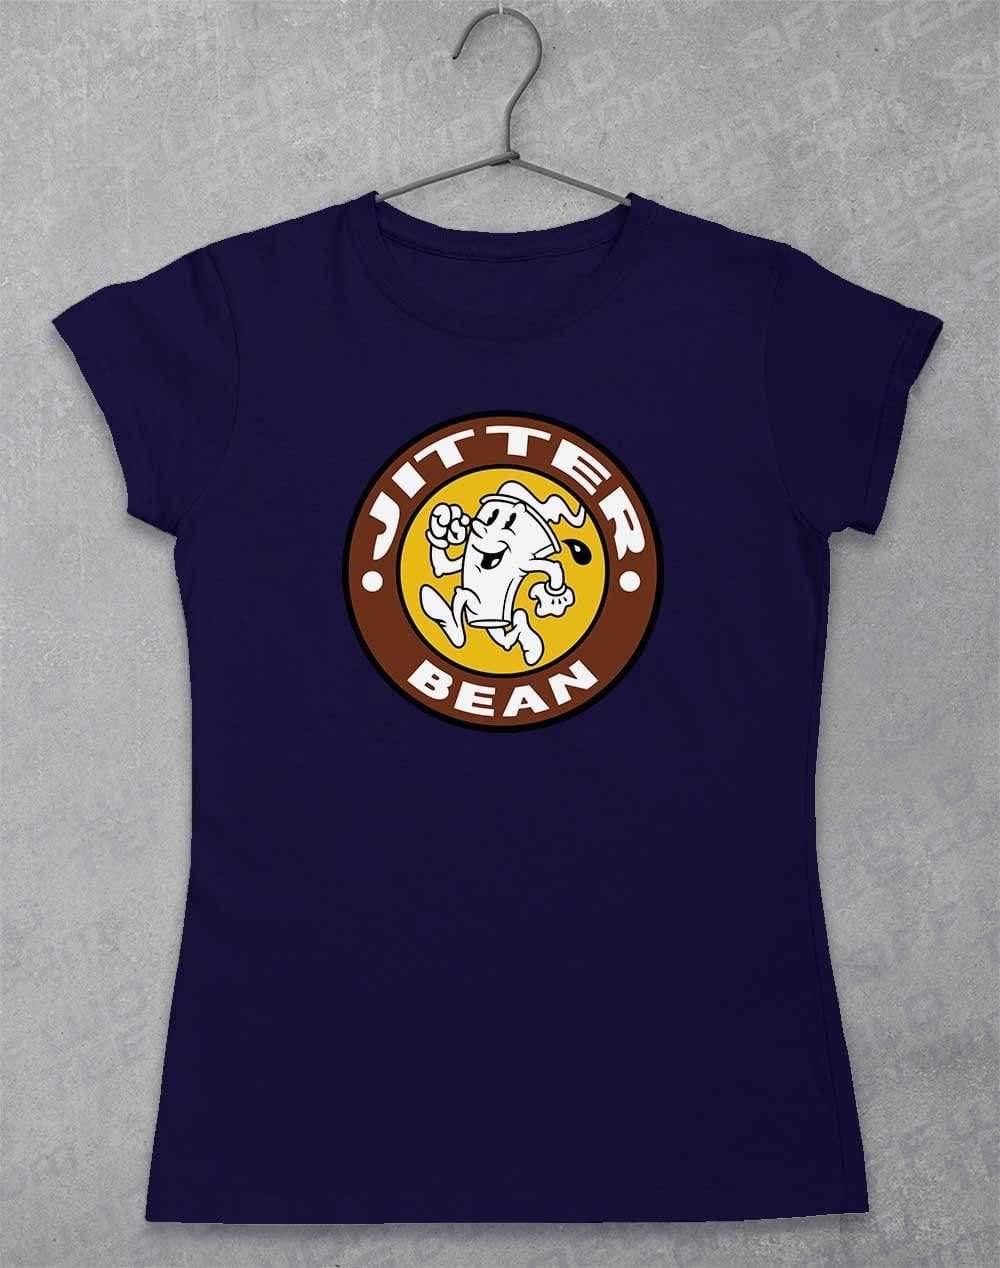 Jitter Bean Women's T-Shirt 8-10 / Navy  - Off World Tees